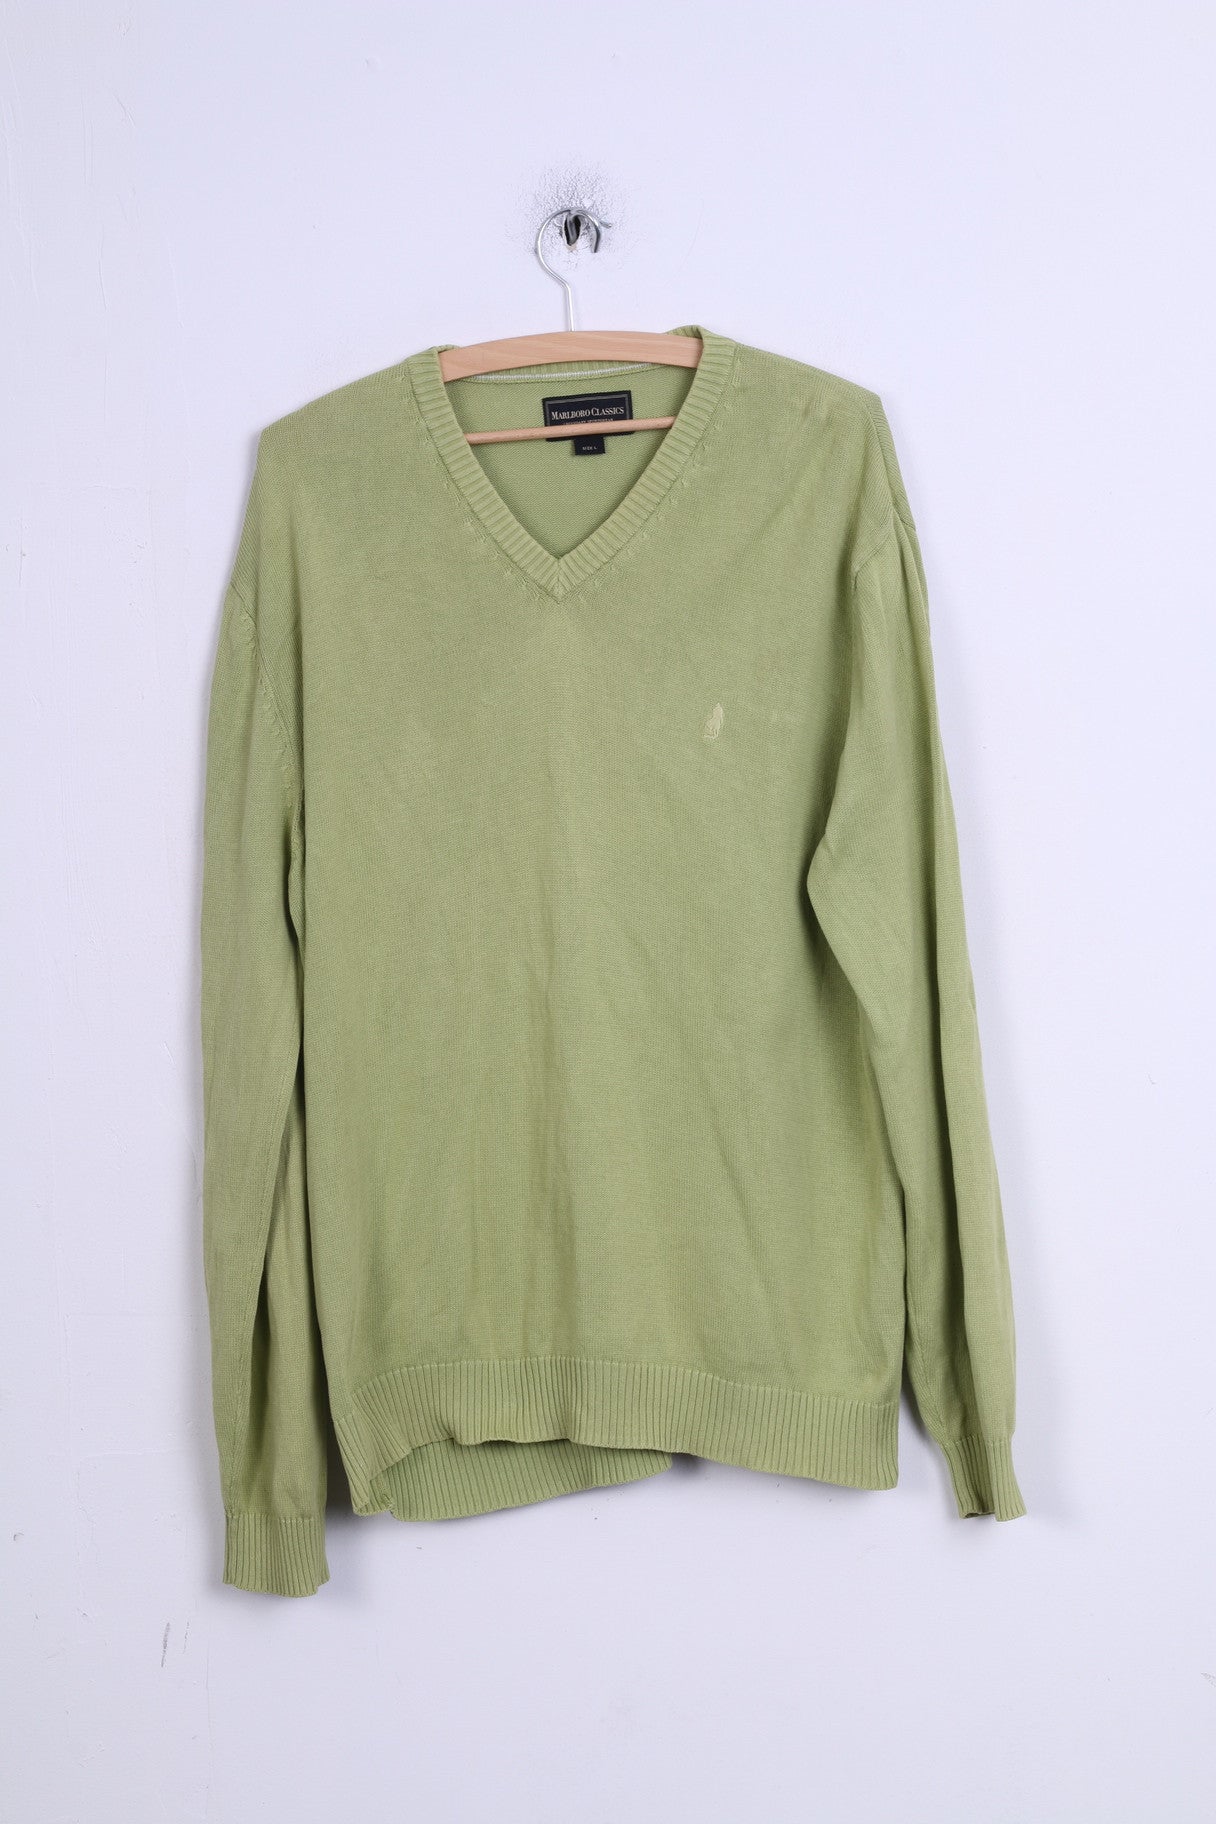 Marlboro Classics Mens L Jumper Green Cotton V Neck Sweater